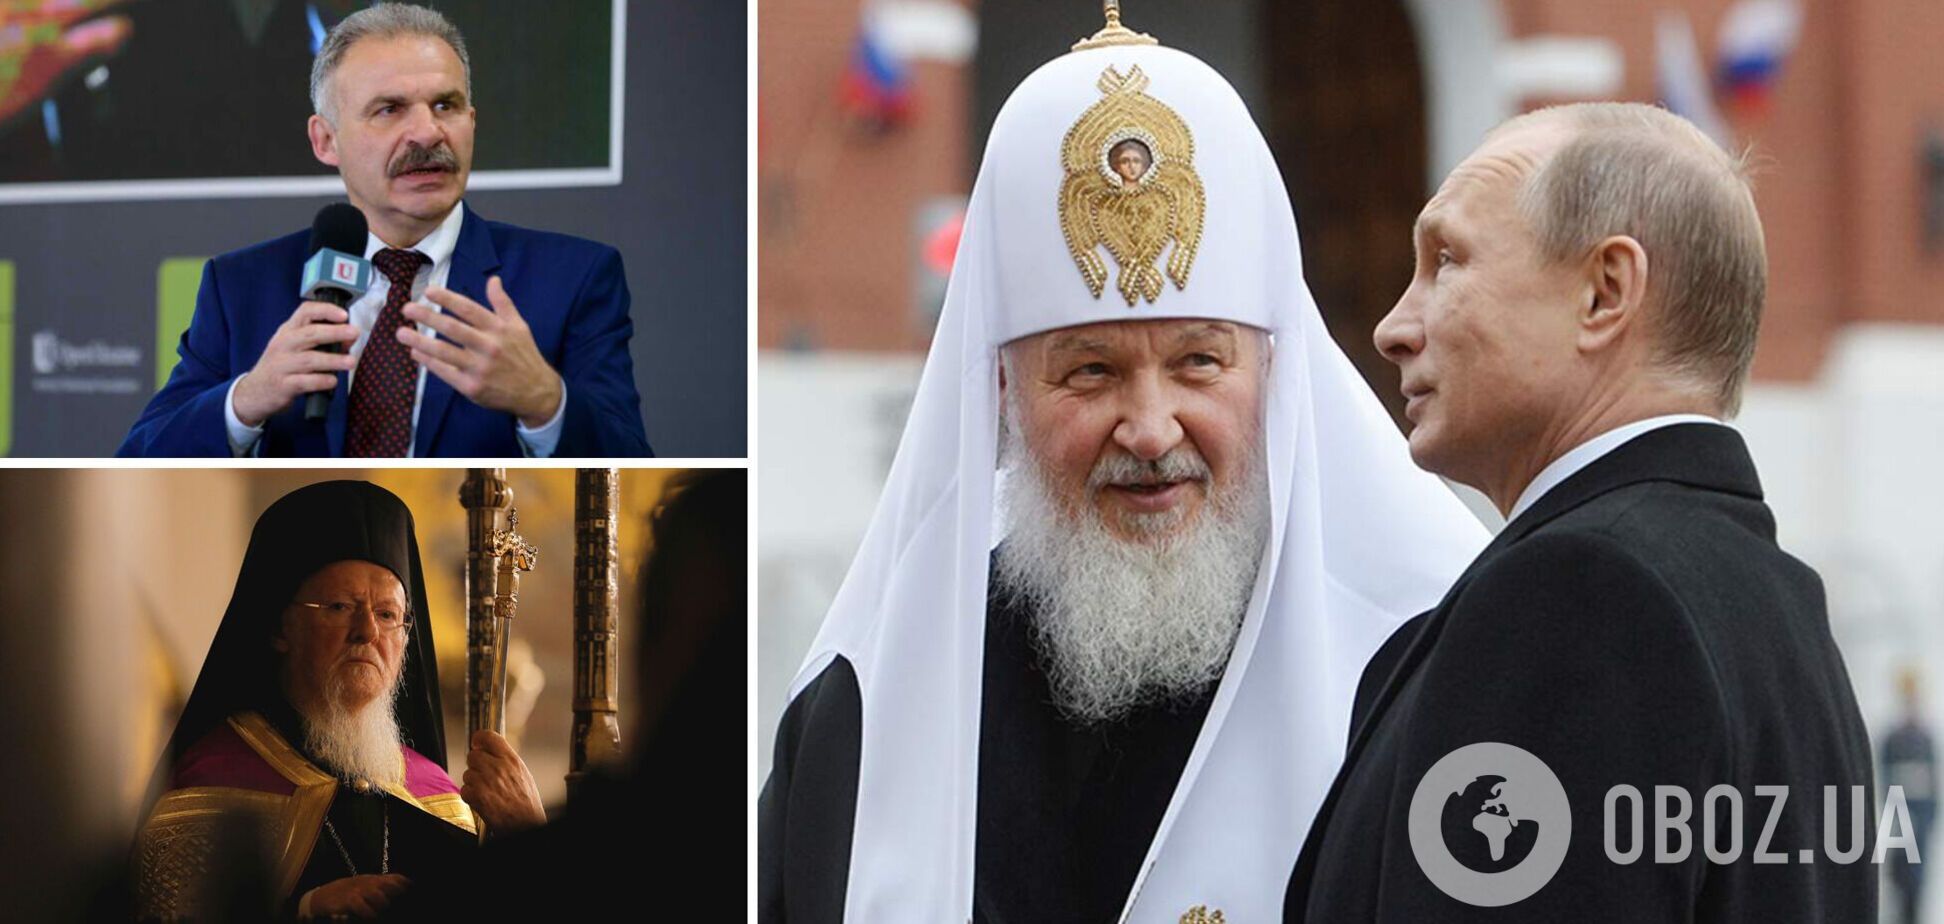 Еленский: патриарха Кирилла ждет удар. Останется ли он без престола? Интервью